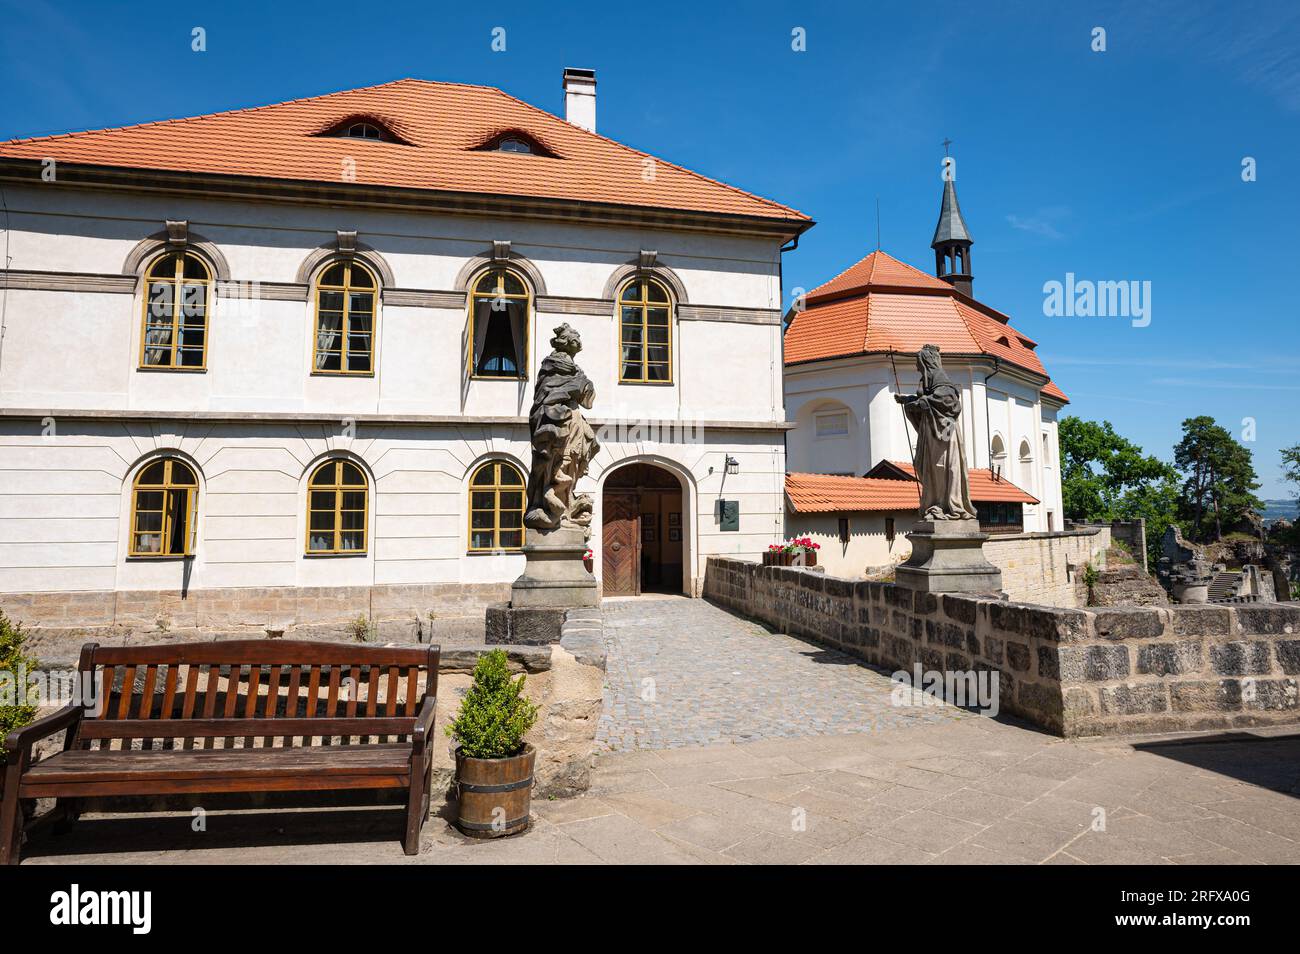 Bâtiments dans la cour du château de Valdštejn près de la ville de Turnov en Bohême, République tchèque Banque D'Images